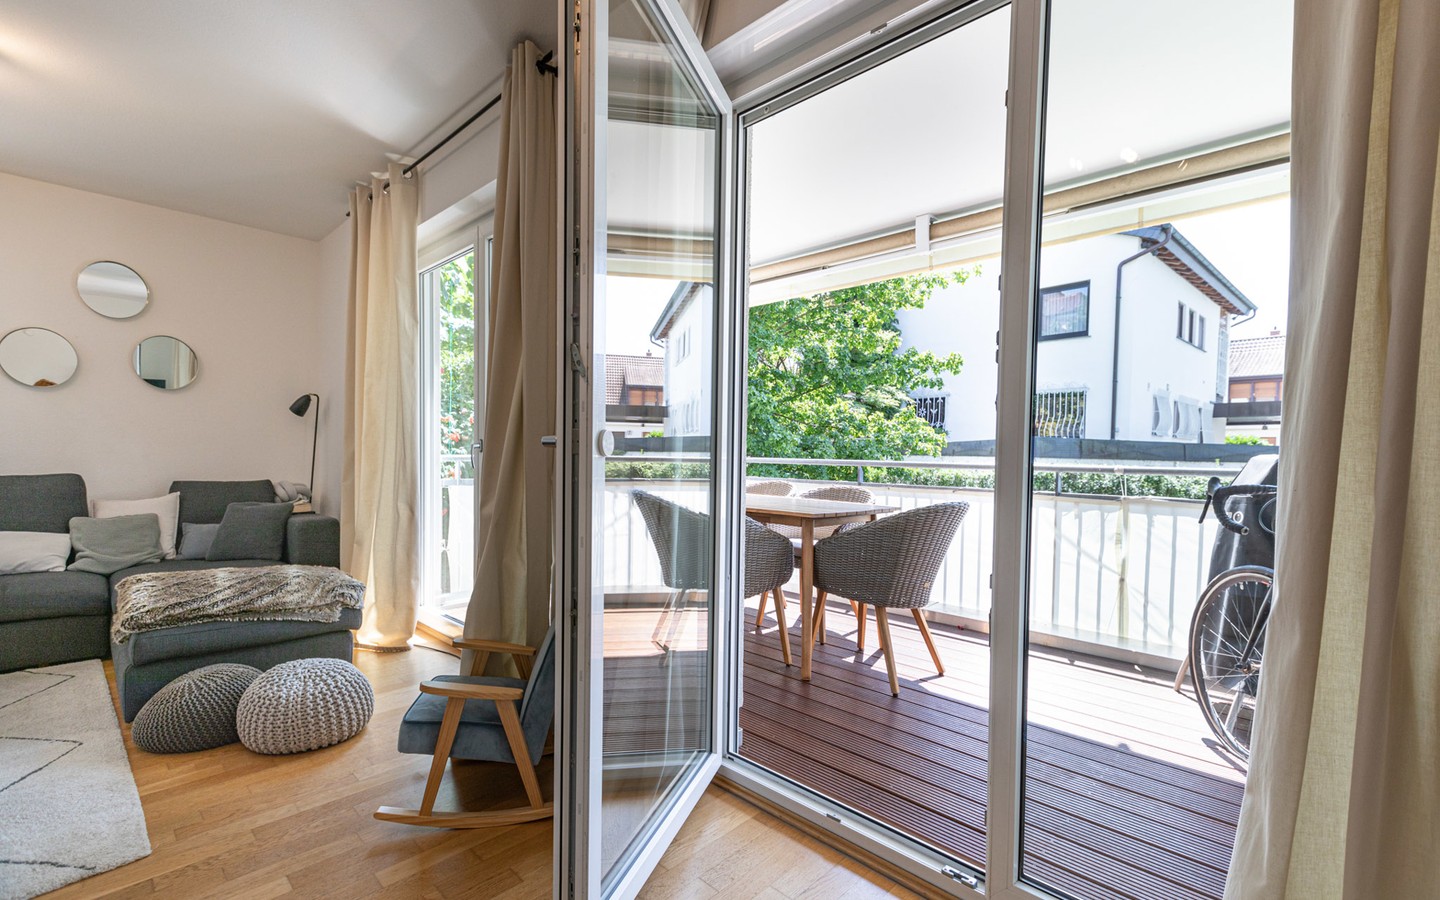 Wohnzimmer - Haus-im-Haus-Feeling: Exklusive Maisonette-Wohnung mit separatem Eingang, Terrasse und Balkon